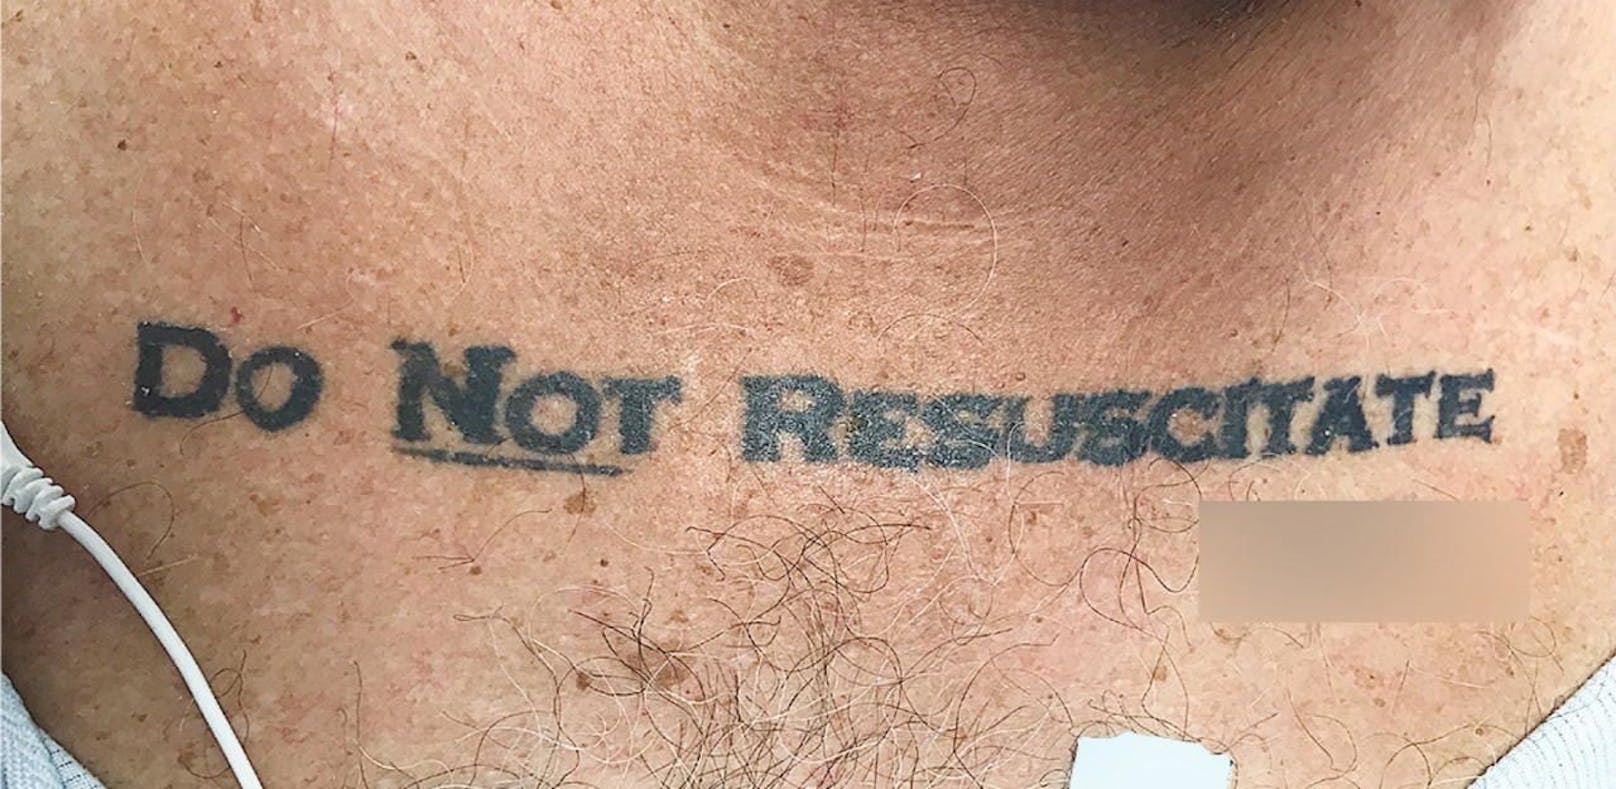 Was tun bei einem "Nicht wiederbeleben"-Tattoo?